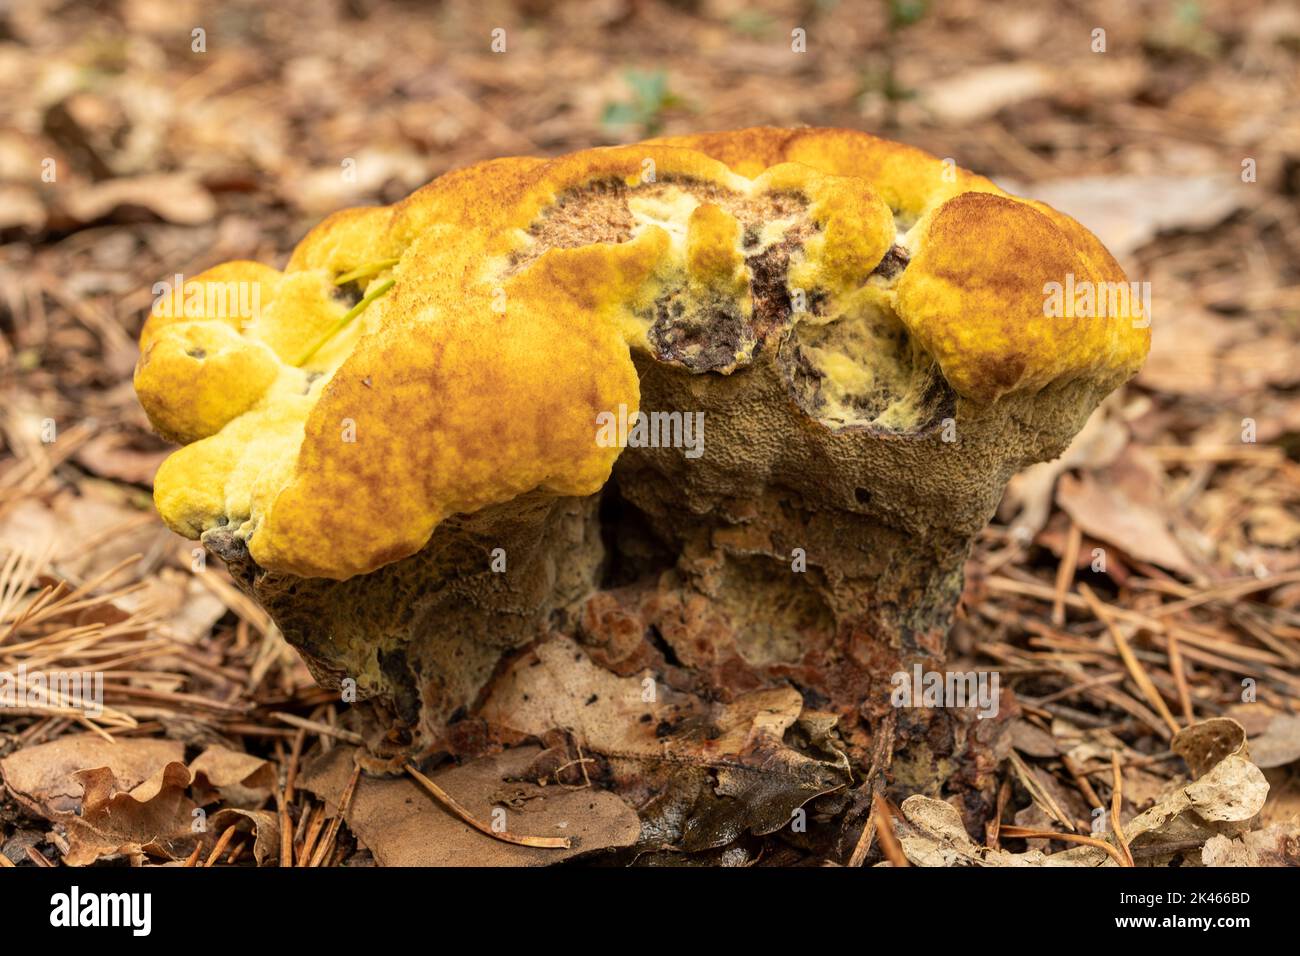 Dyers mazegill fungus, chiamato anche Dyer's polipore (Phaeolus schweinitzii) sul terreno boschivo durante l'autunno o settembre, Inghilterra, UK Foto Stock